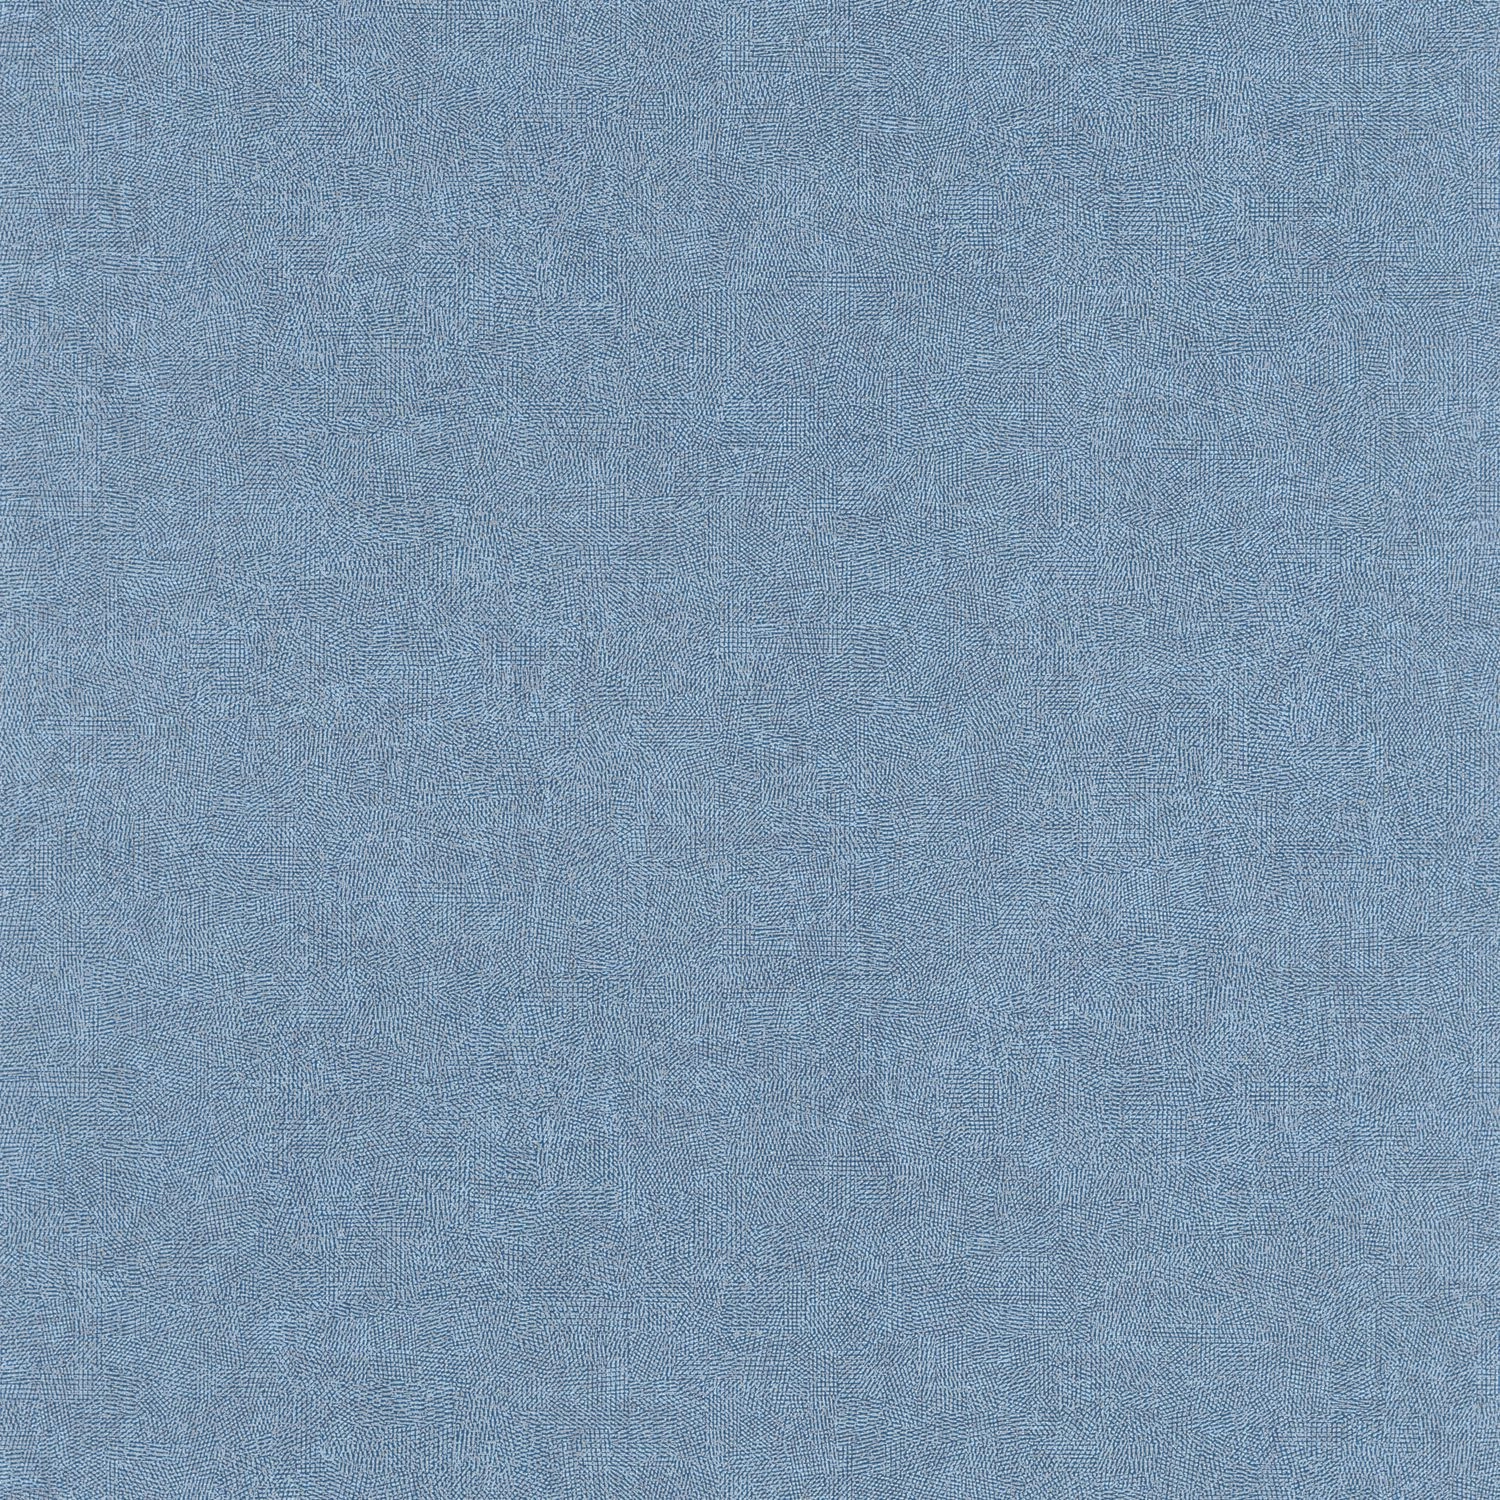 Casadeco struktúrált vinyl design tapéta kék színben